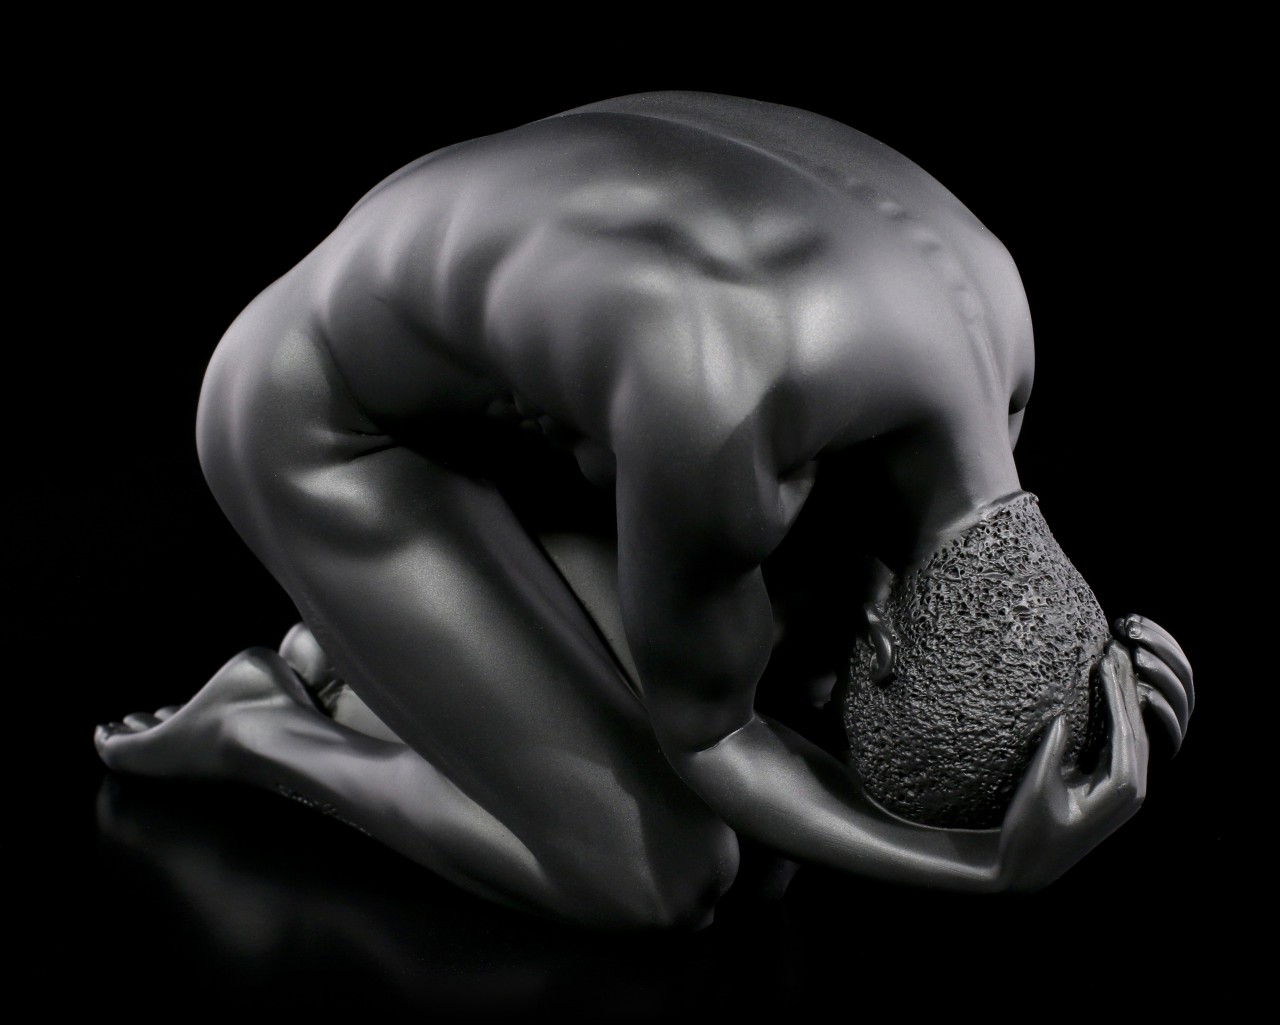 Male Nude Figurine - Kneeling on the Ground - black